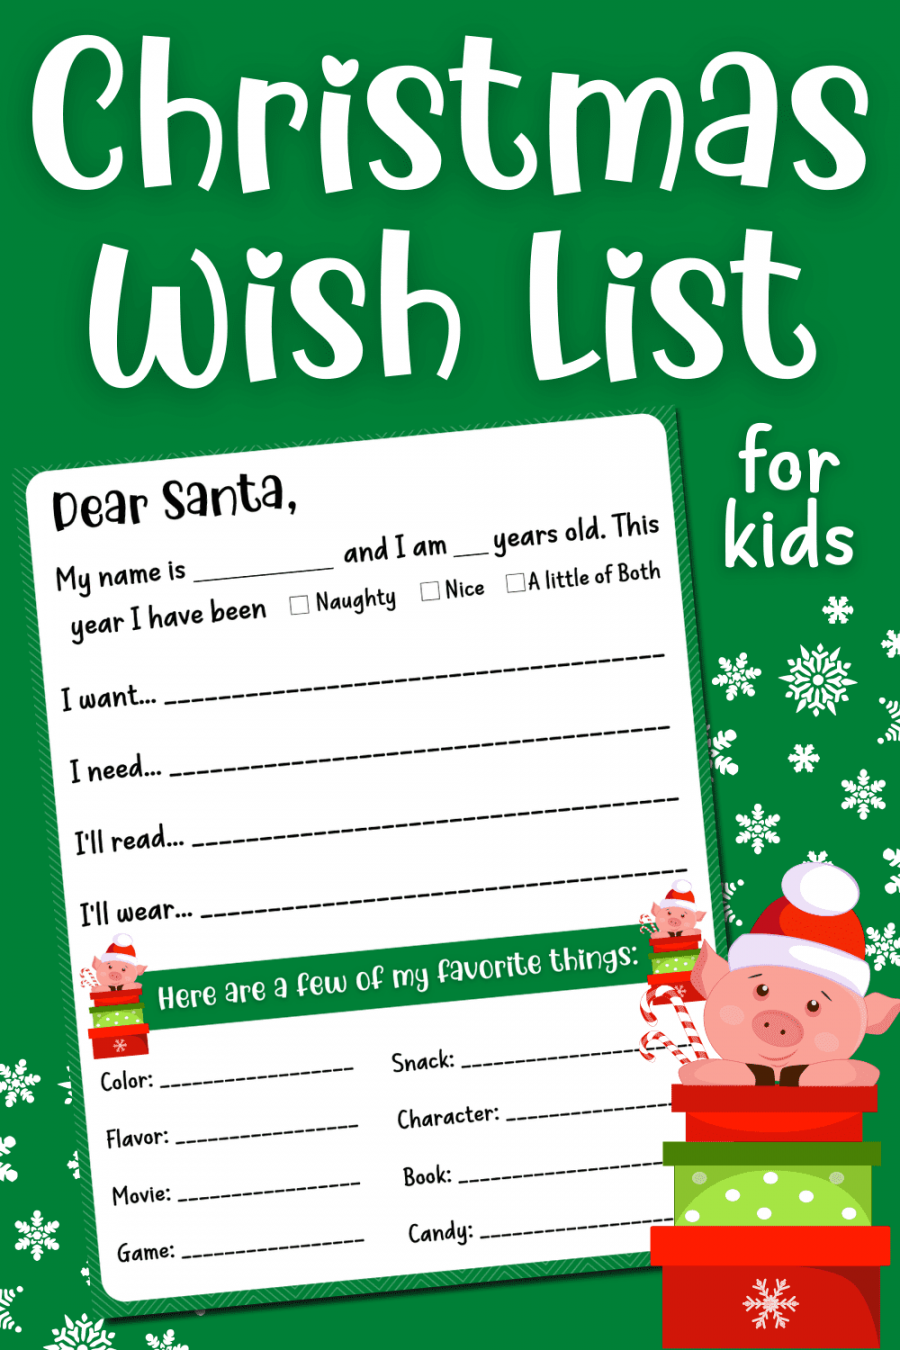 Free Printable Christmas Wish List for Kids - FREE Printables - Free Printable Christmas Wish List